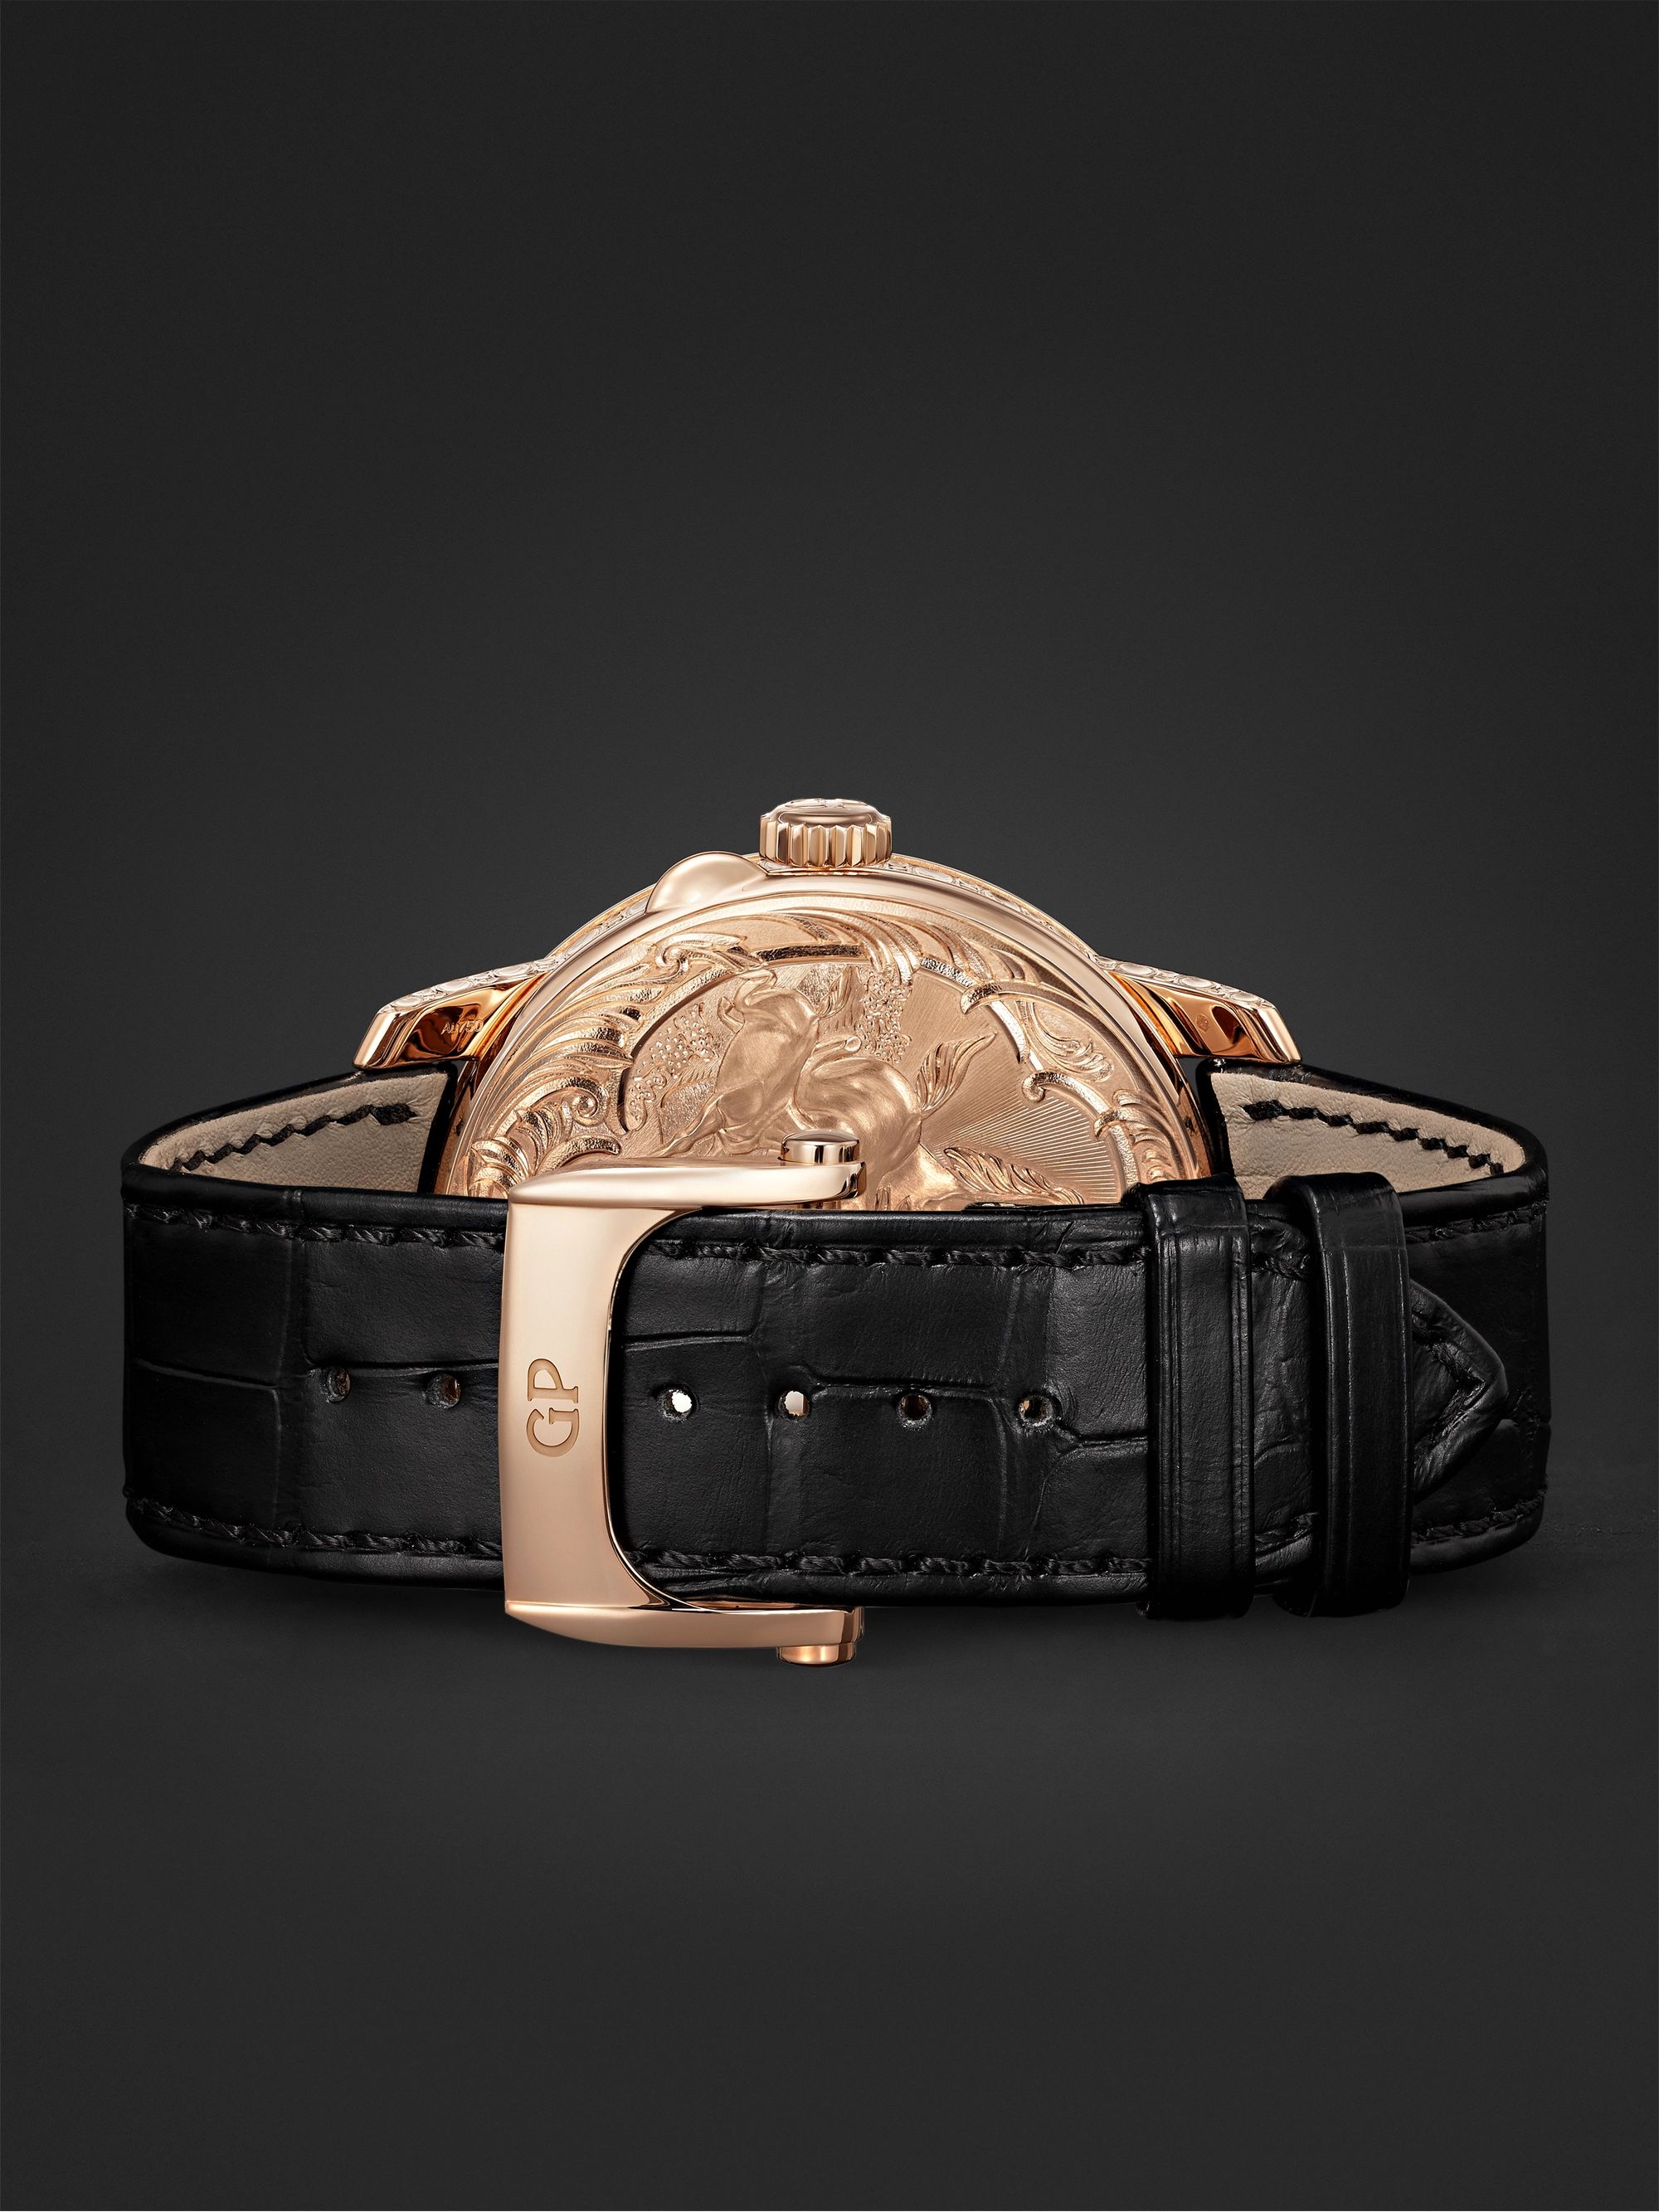 GIRARD-PERREGAUX La Esmeralda Automatic Tourbillon 44mm Pink Gold and Alligator Watch, Ref. No. 99276-52-000-BA6E